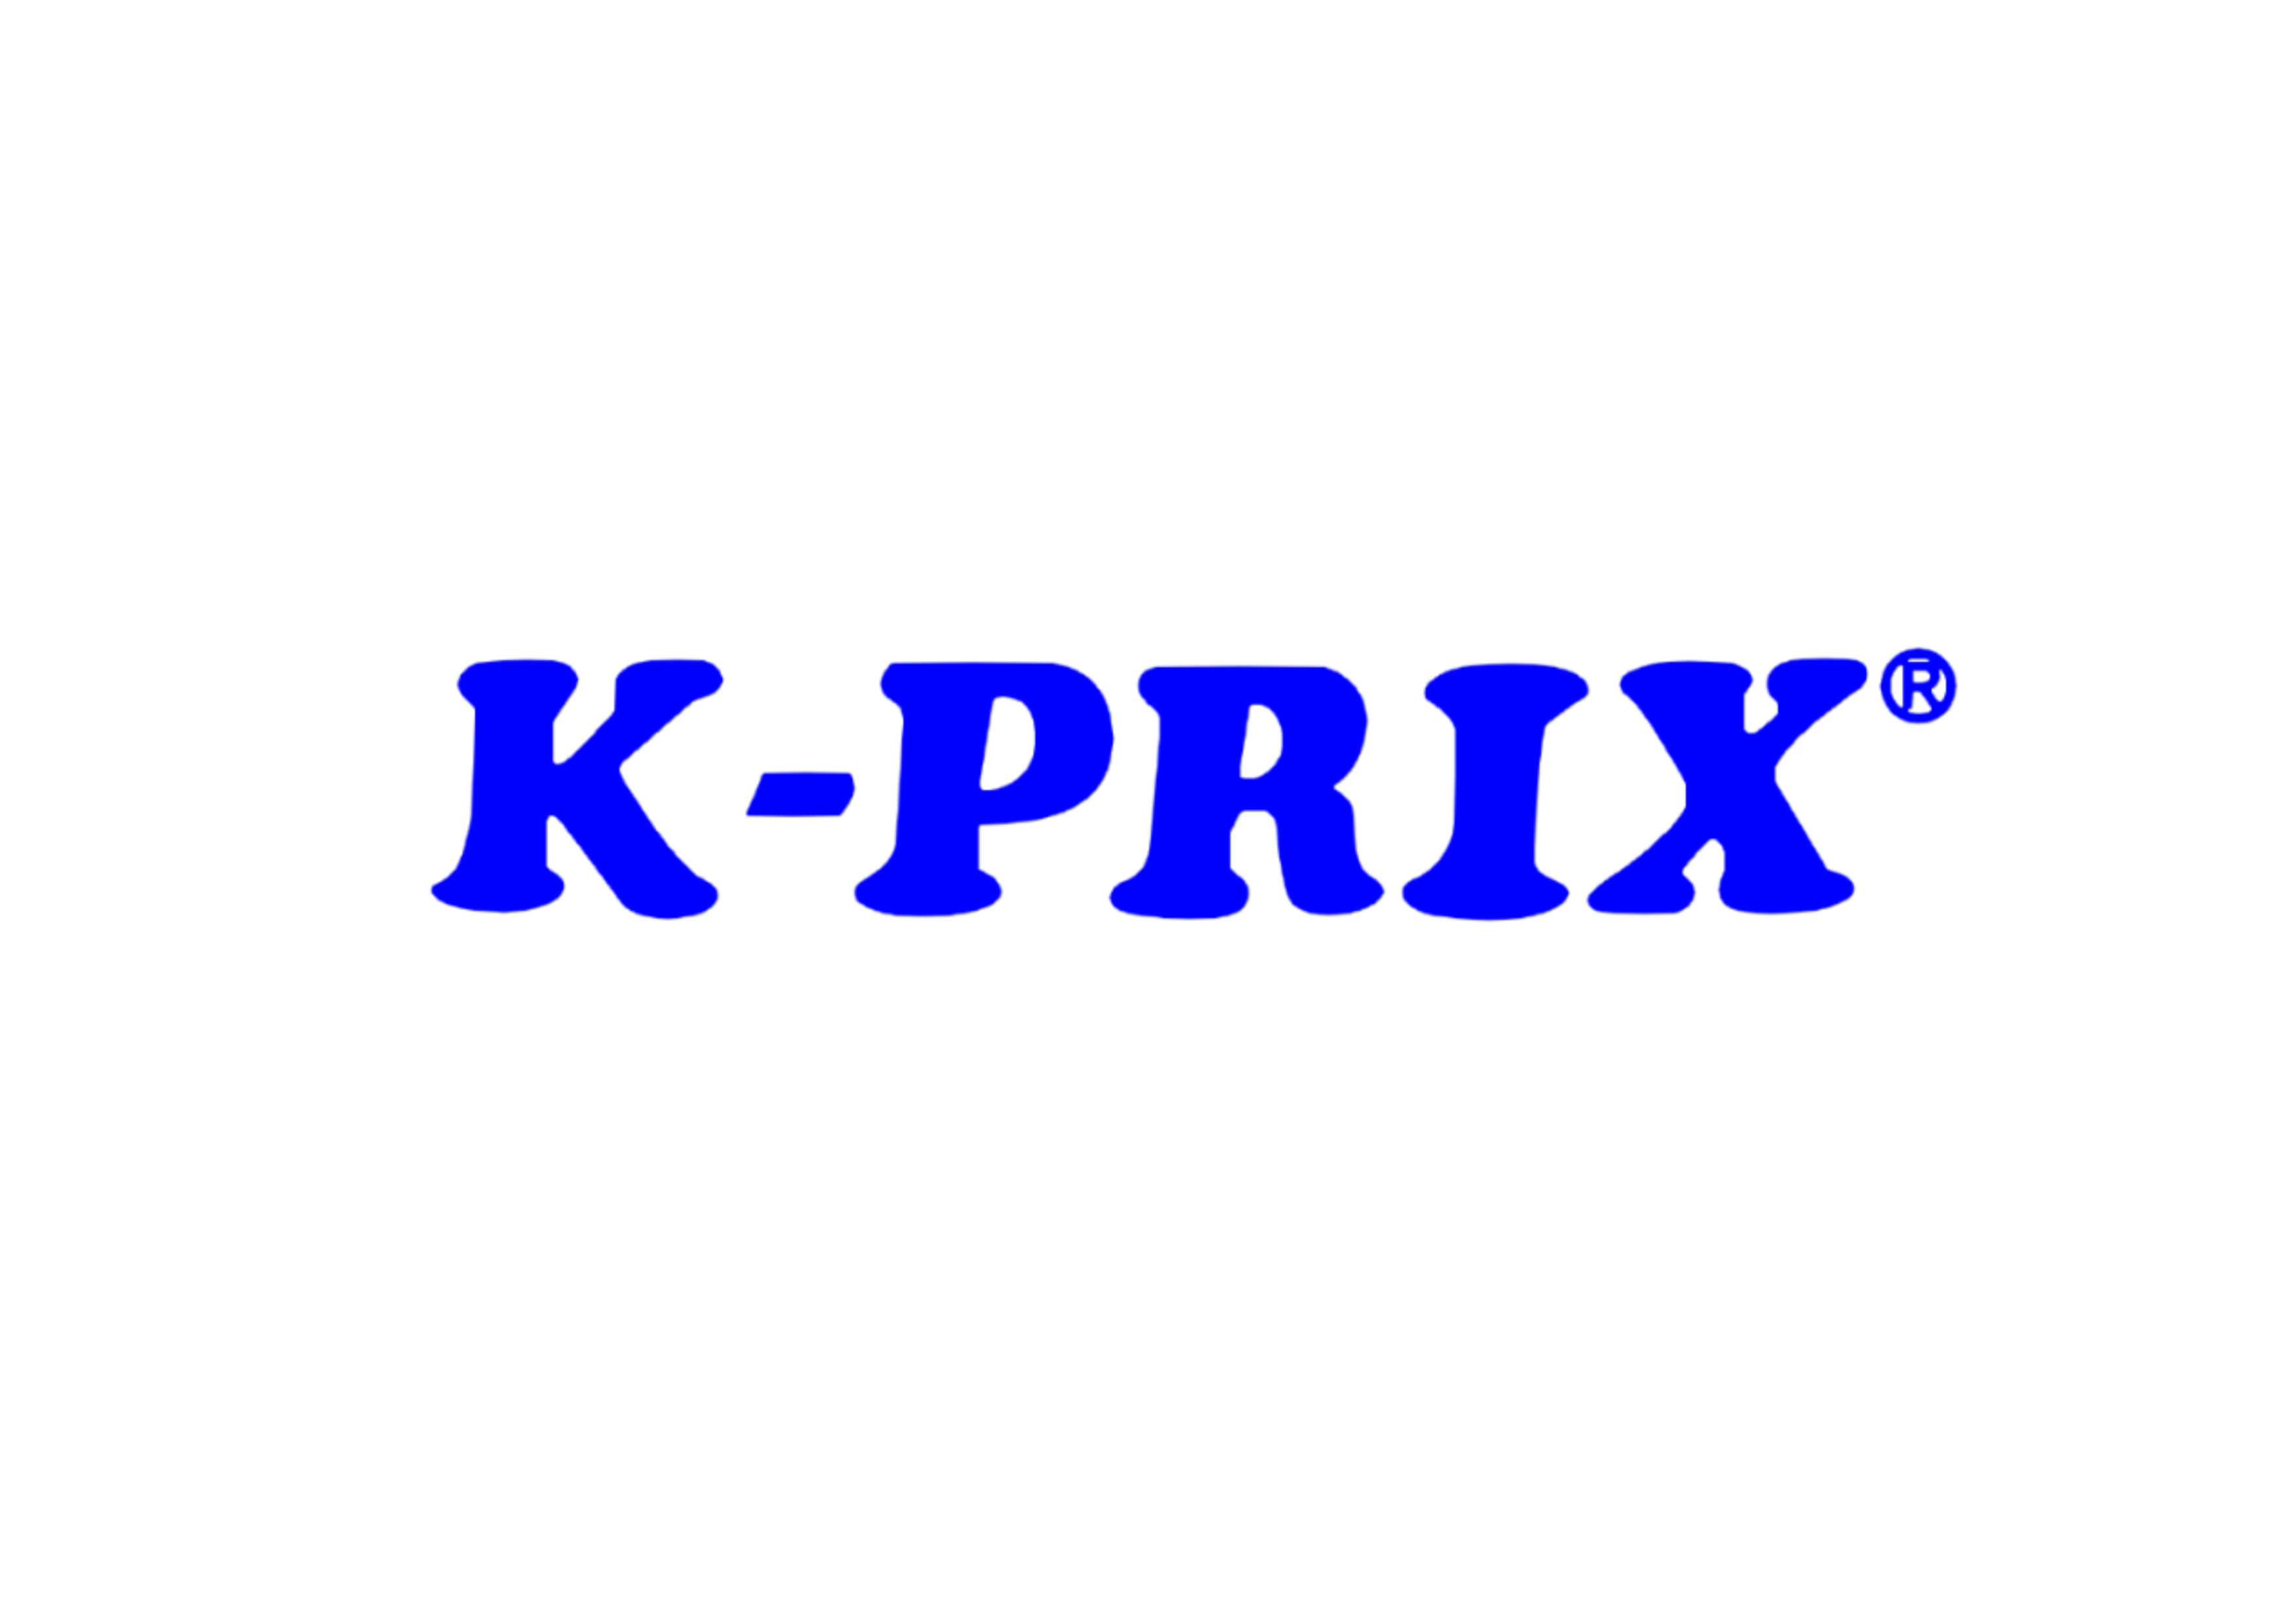 K-PRIX